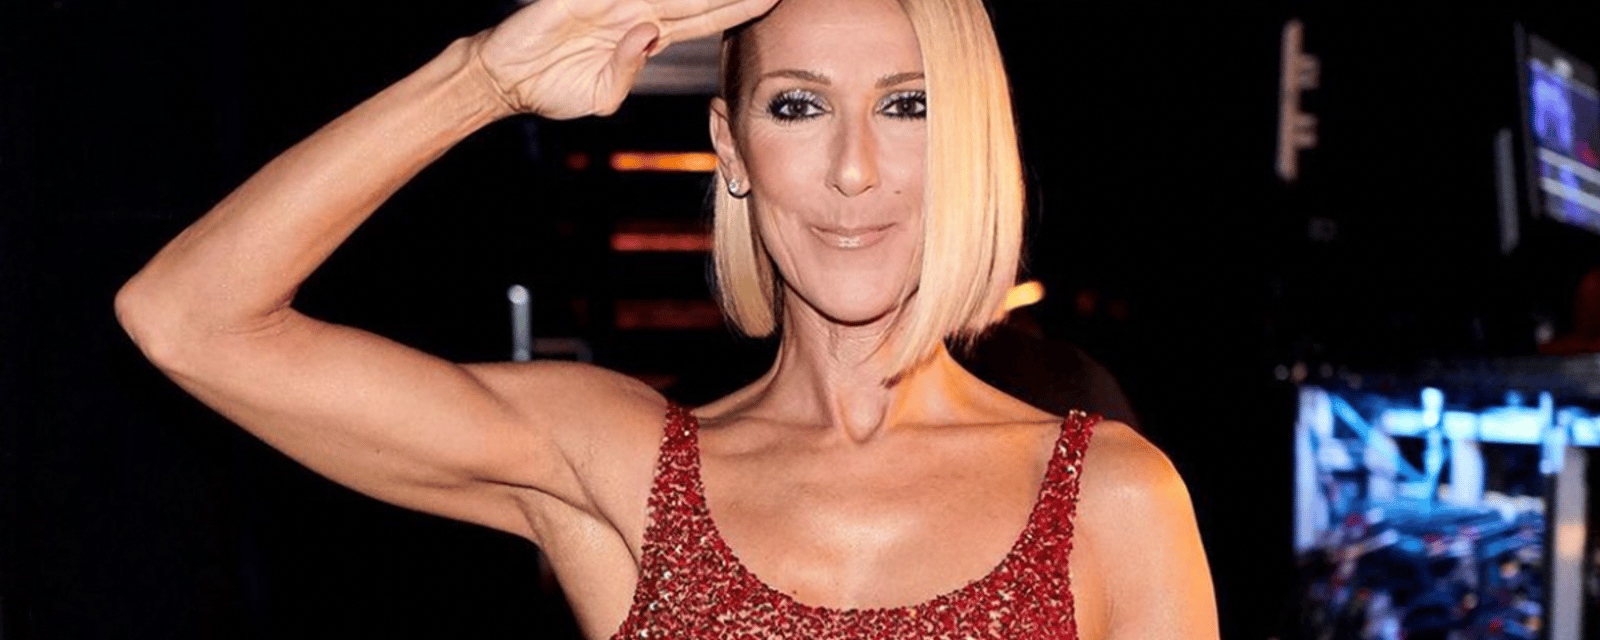 Une vidéo en coulisses de Céline Dion rassure ses fans concernant son état de santé